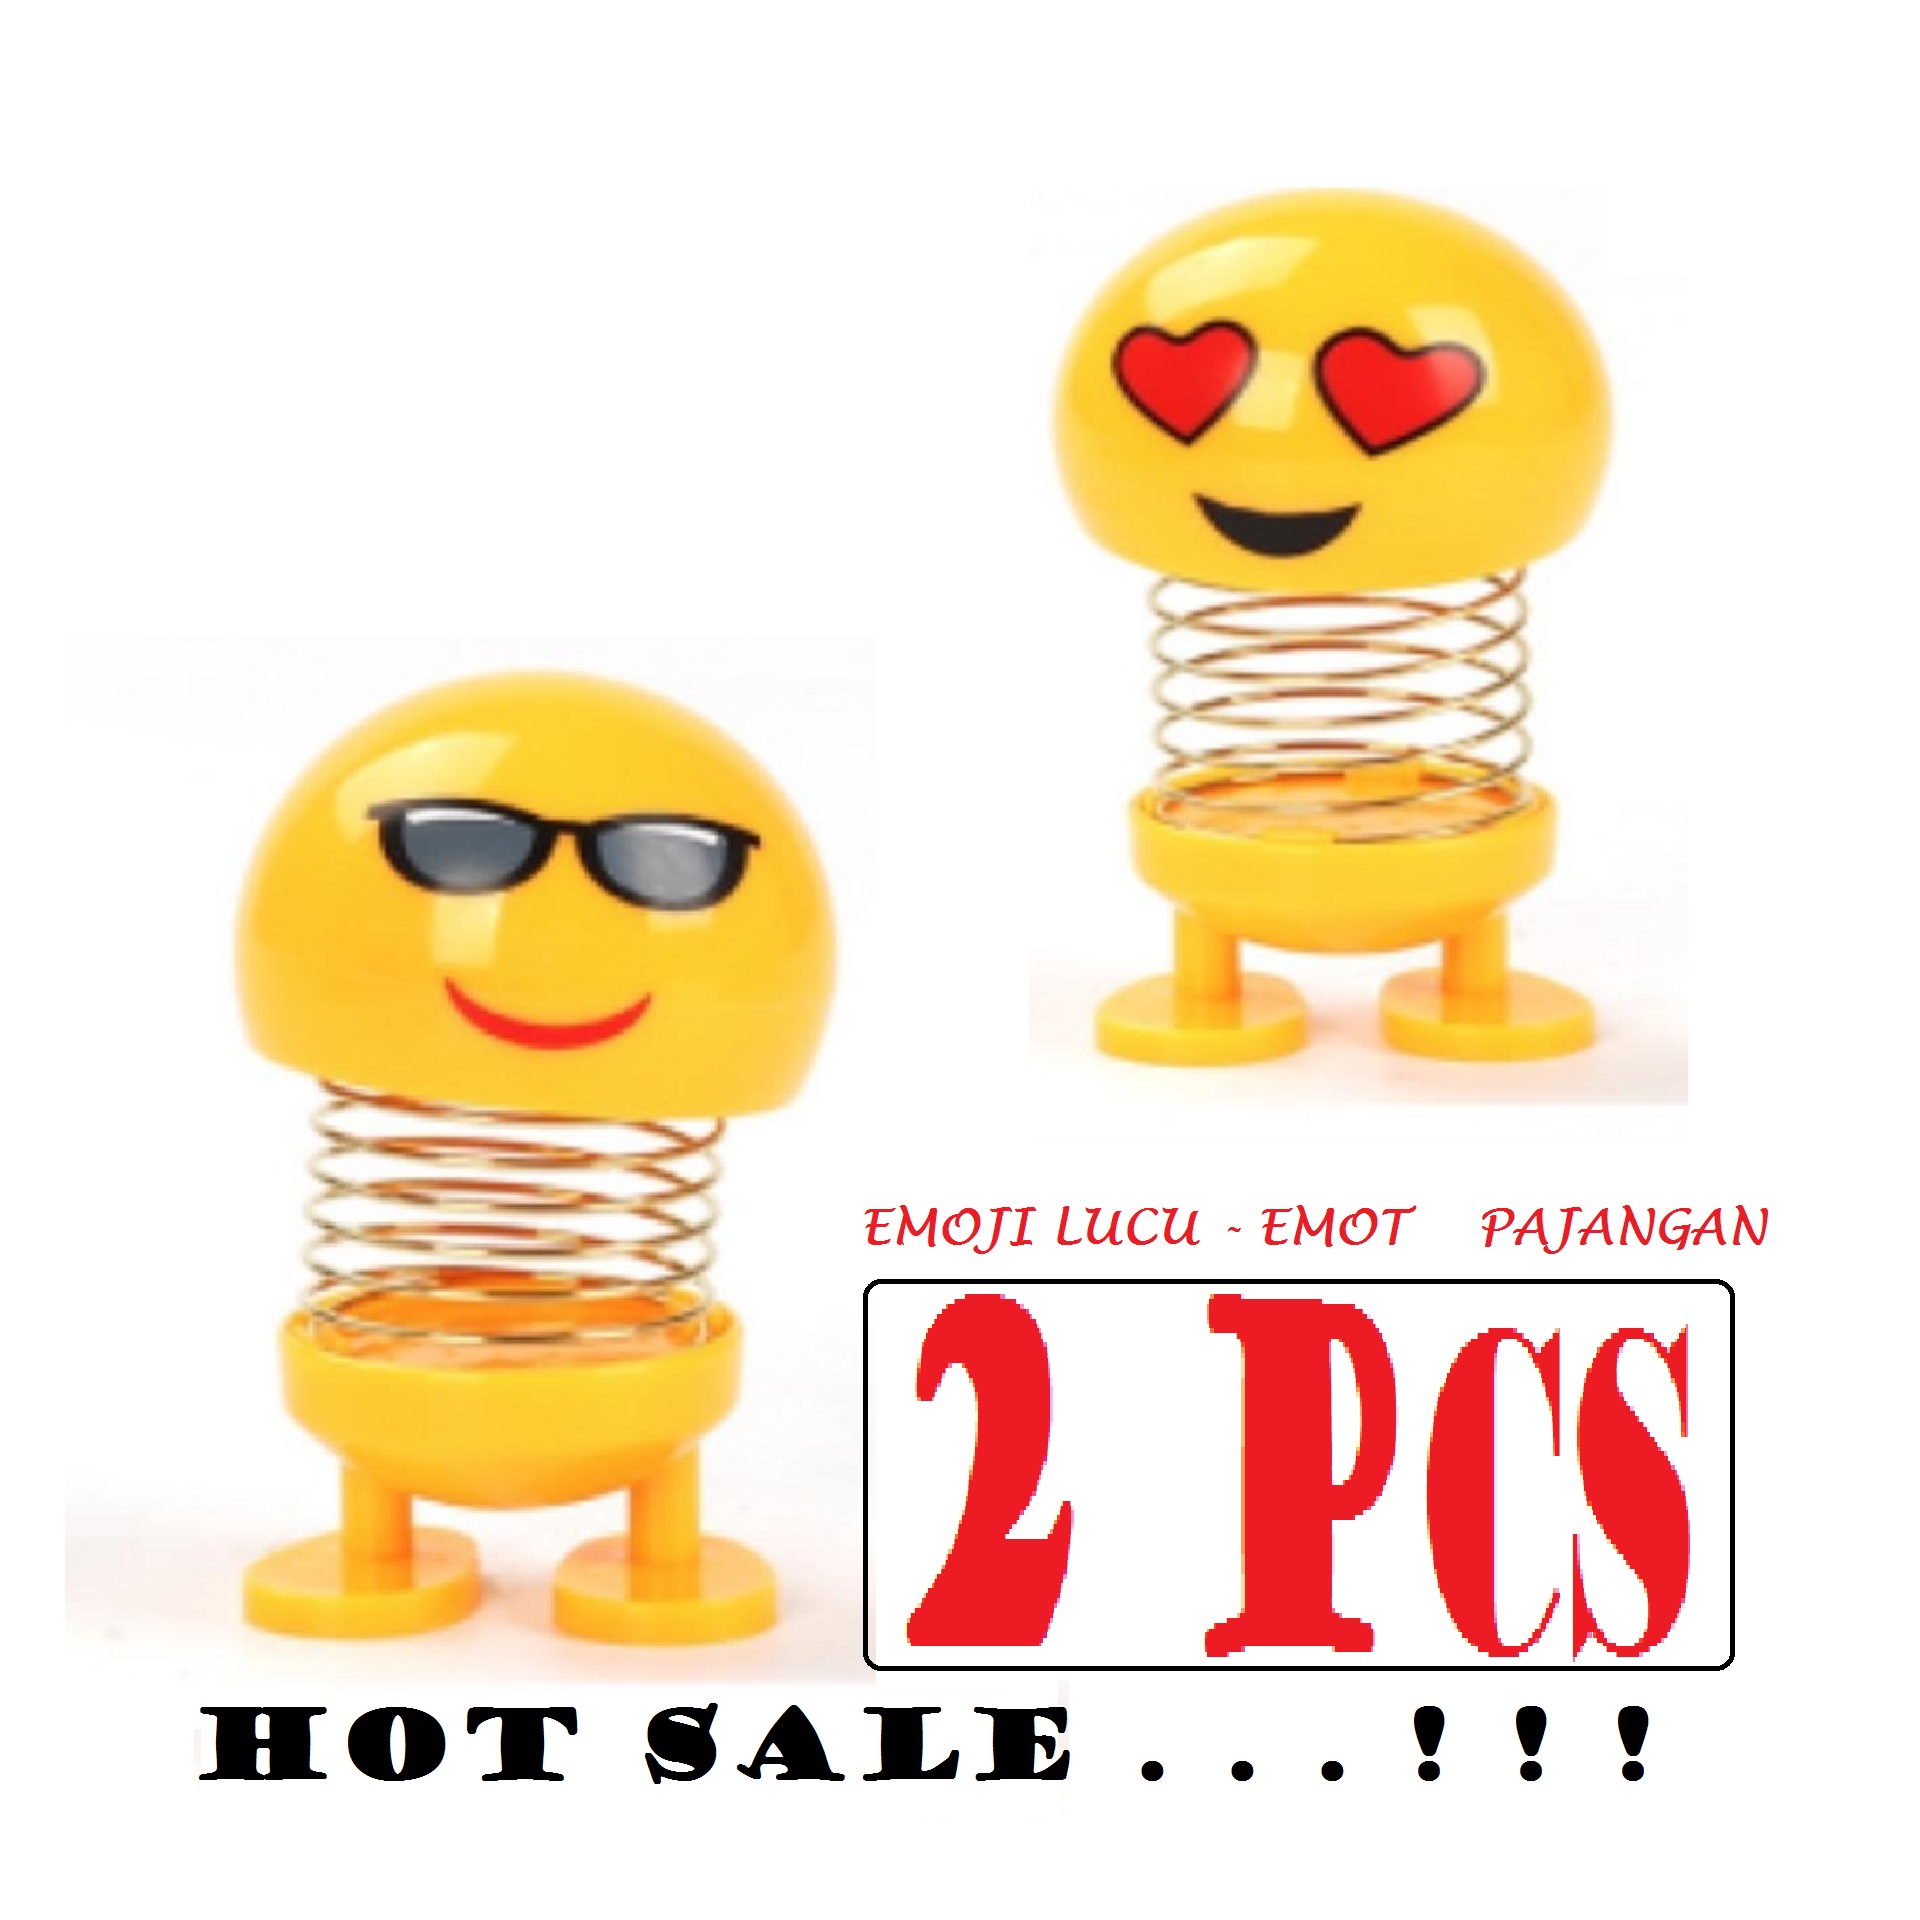 Hot Sale Emoji 2pcs Emoji Goyang Pajangan Emot Lucu Emoji